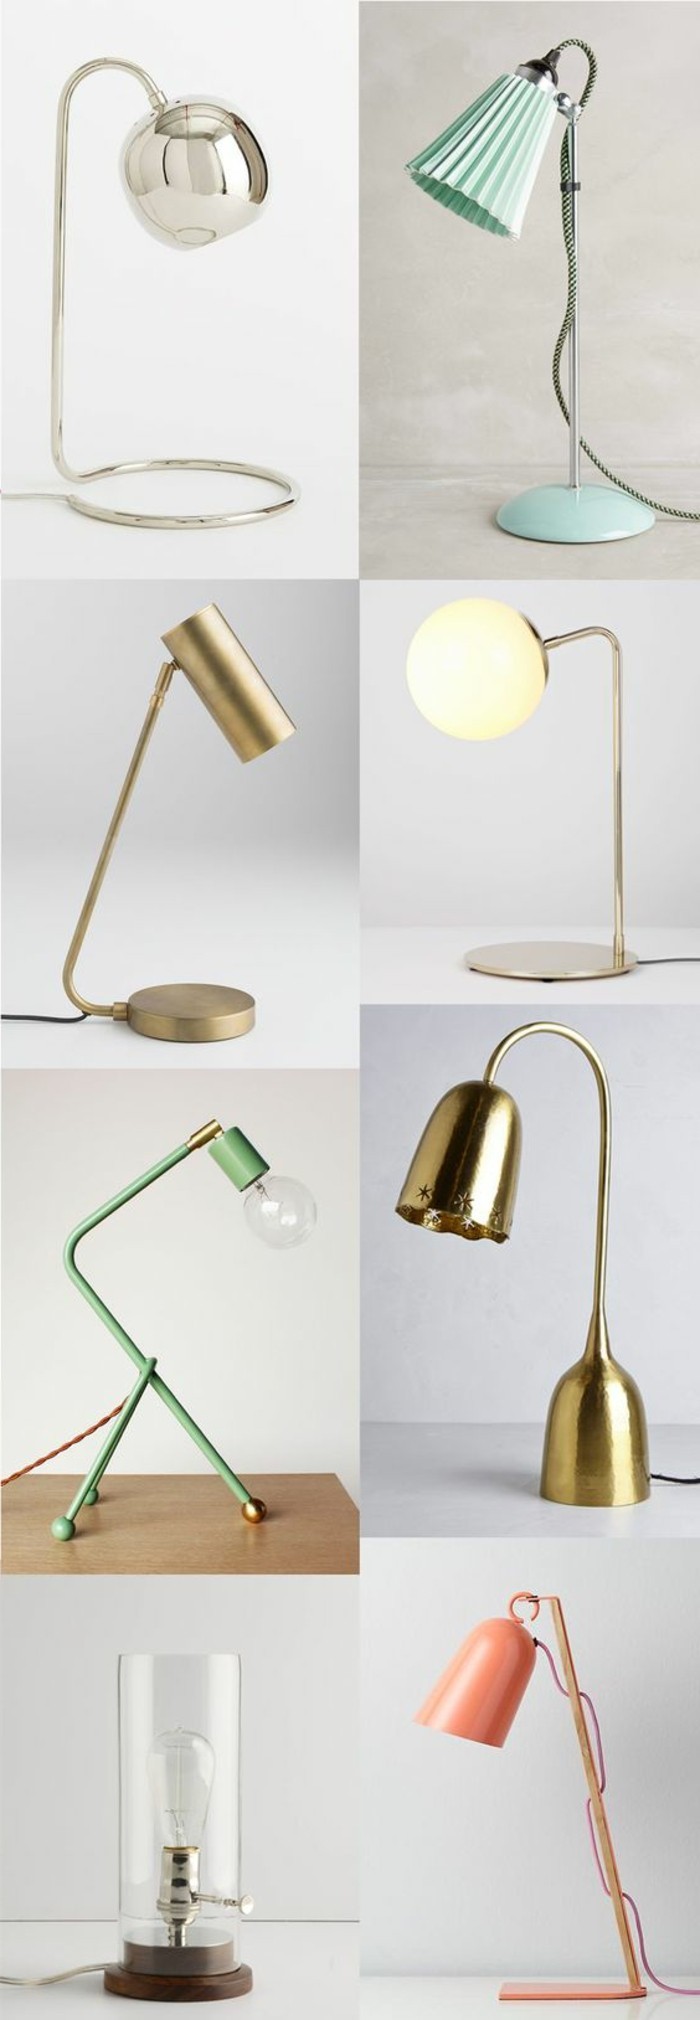 0-lampe-de-bureau-design-original-lampe-de-bureau-chic-lampe-originale